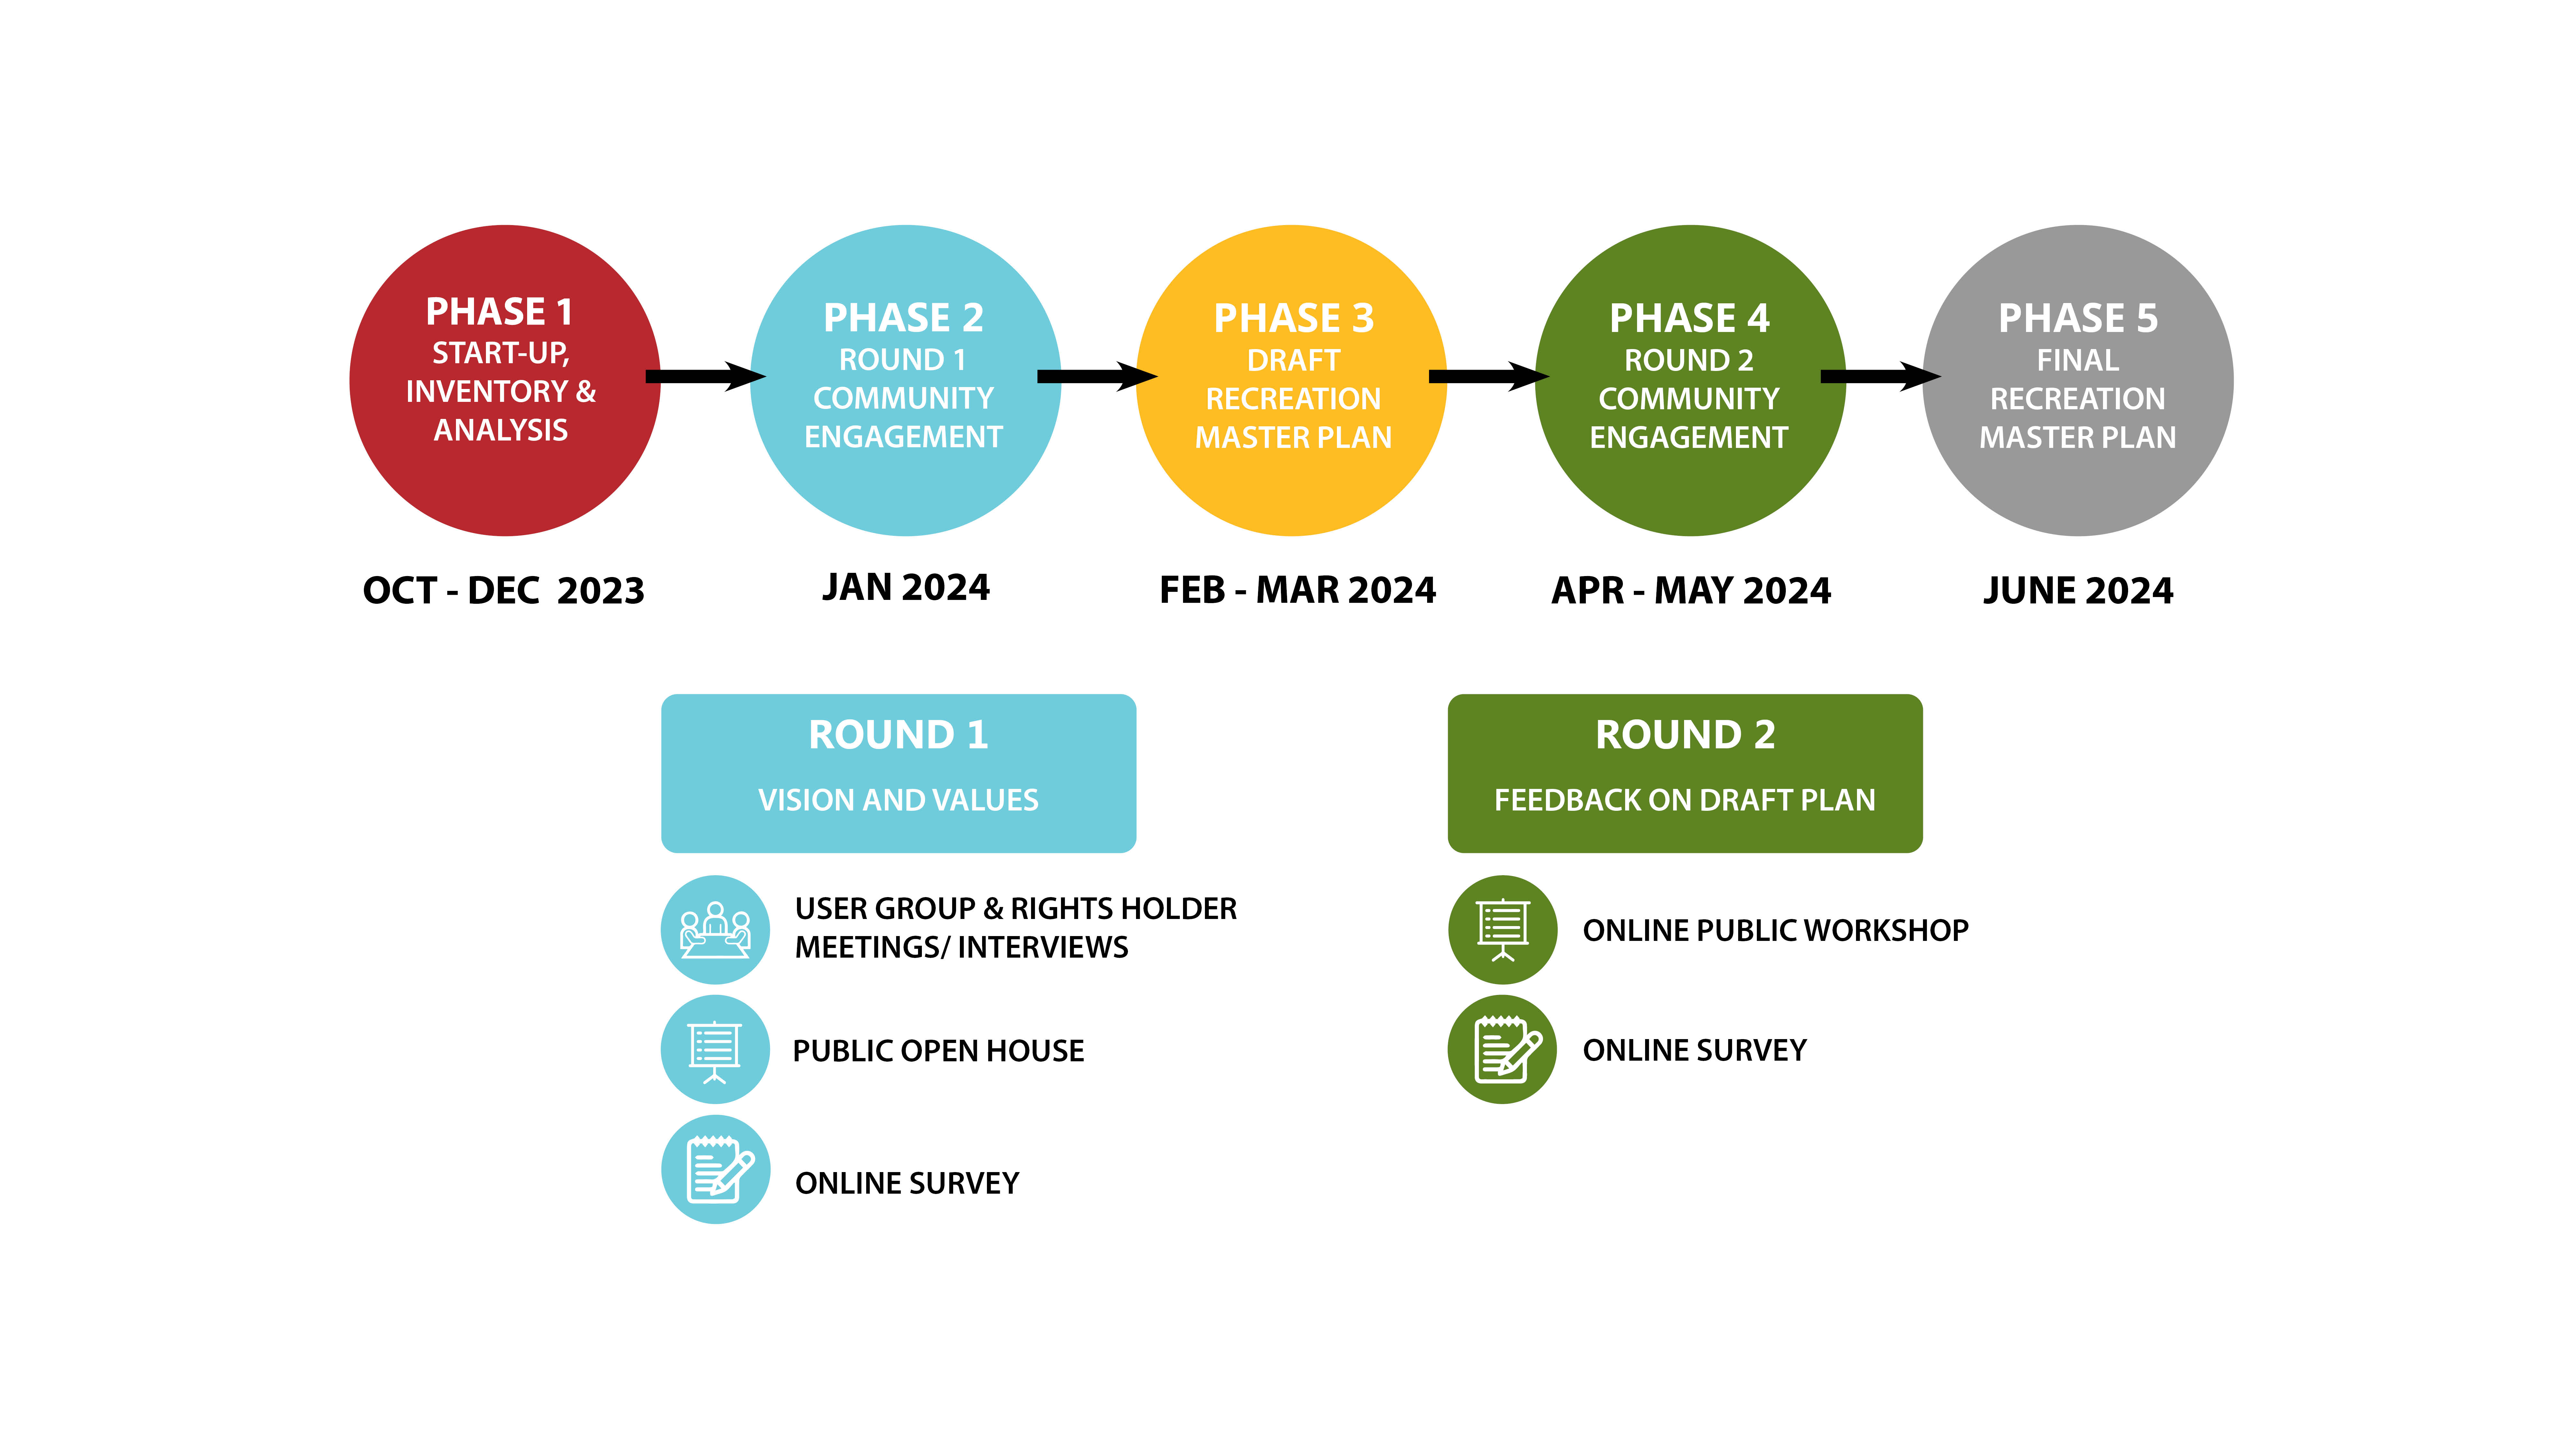 Recreation Masterplan Timeline